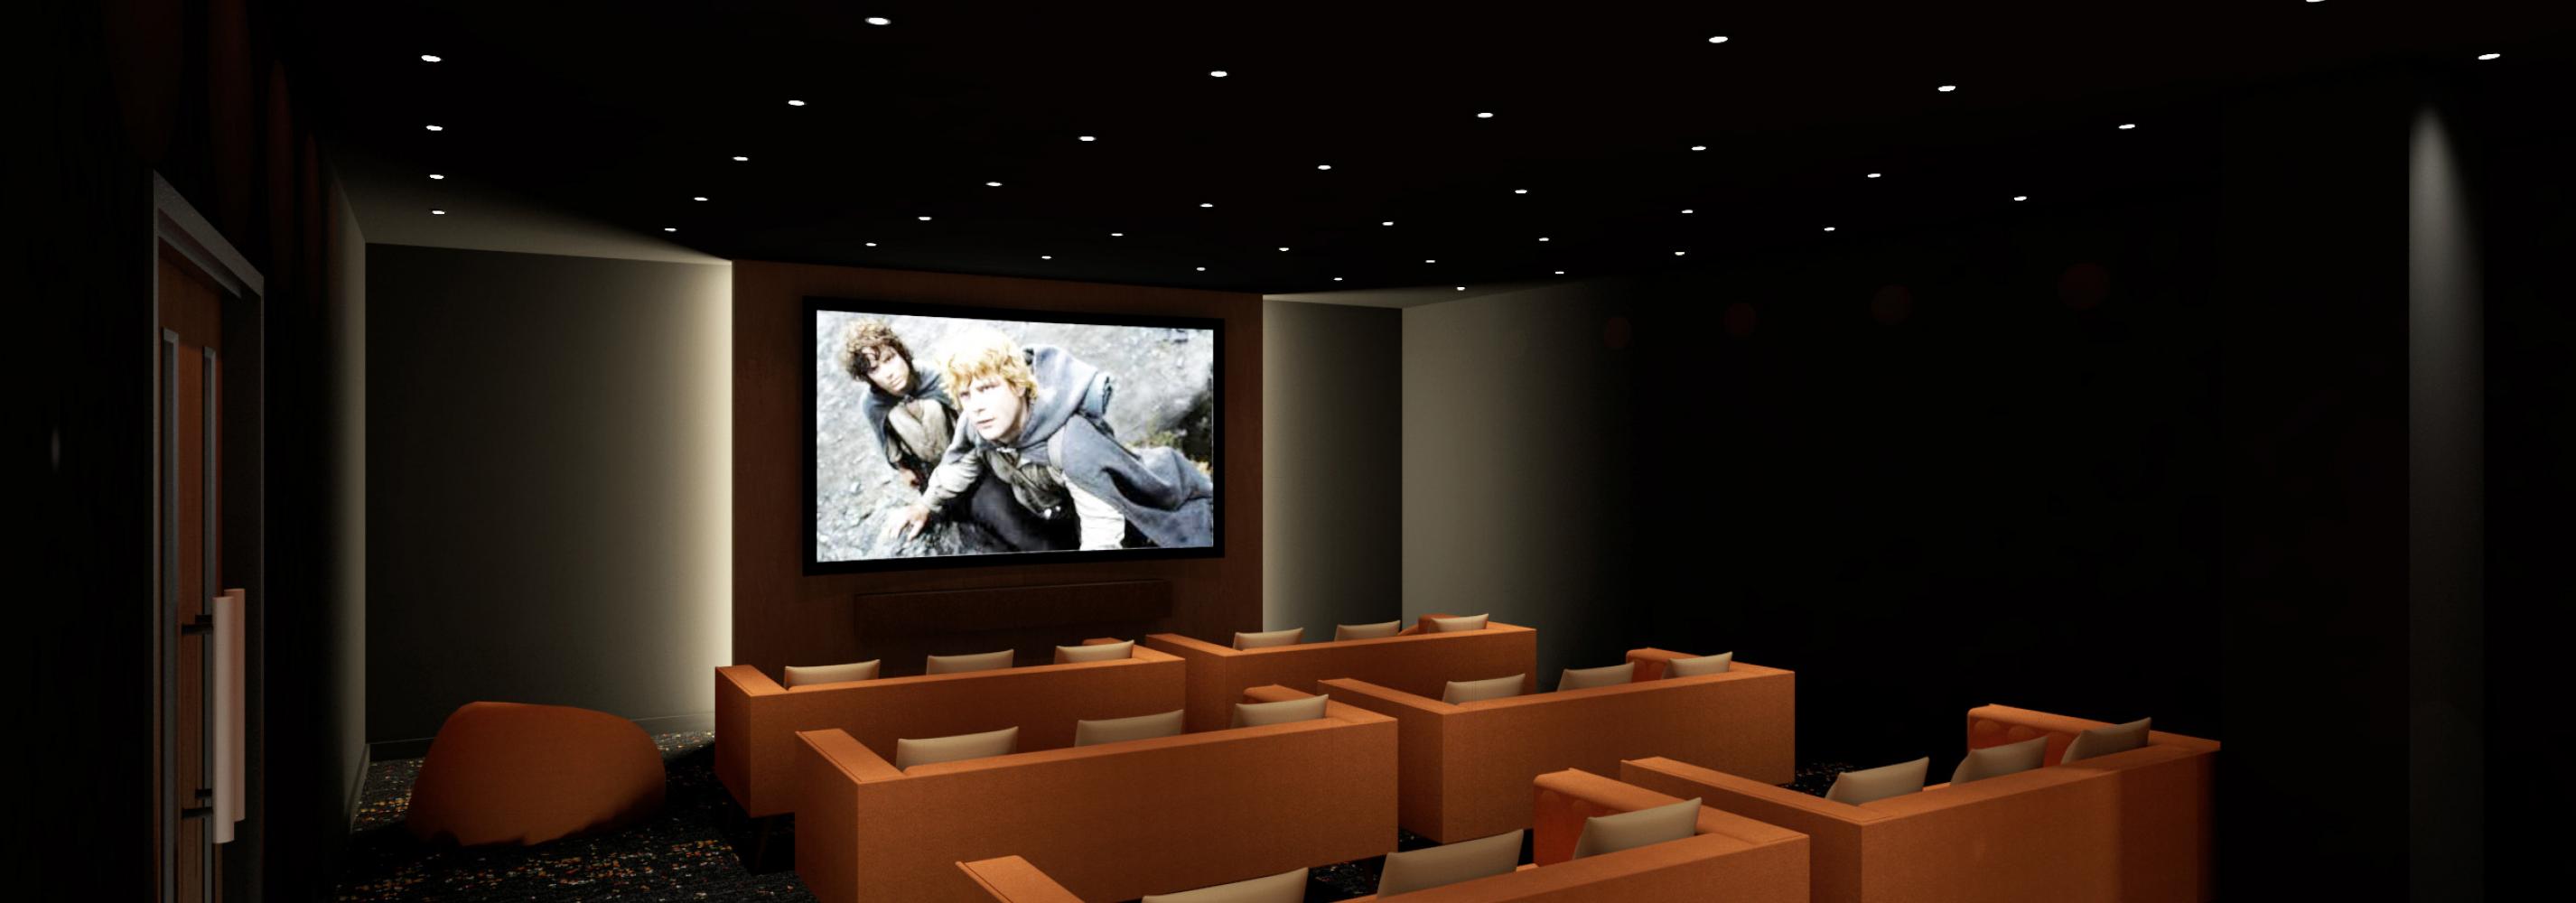 Cinema Room